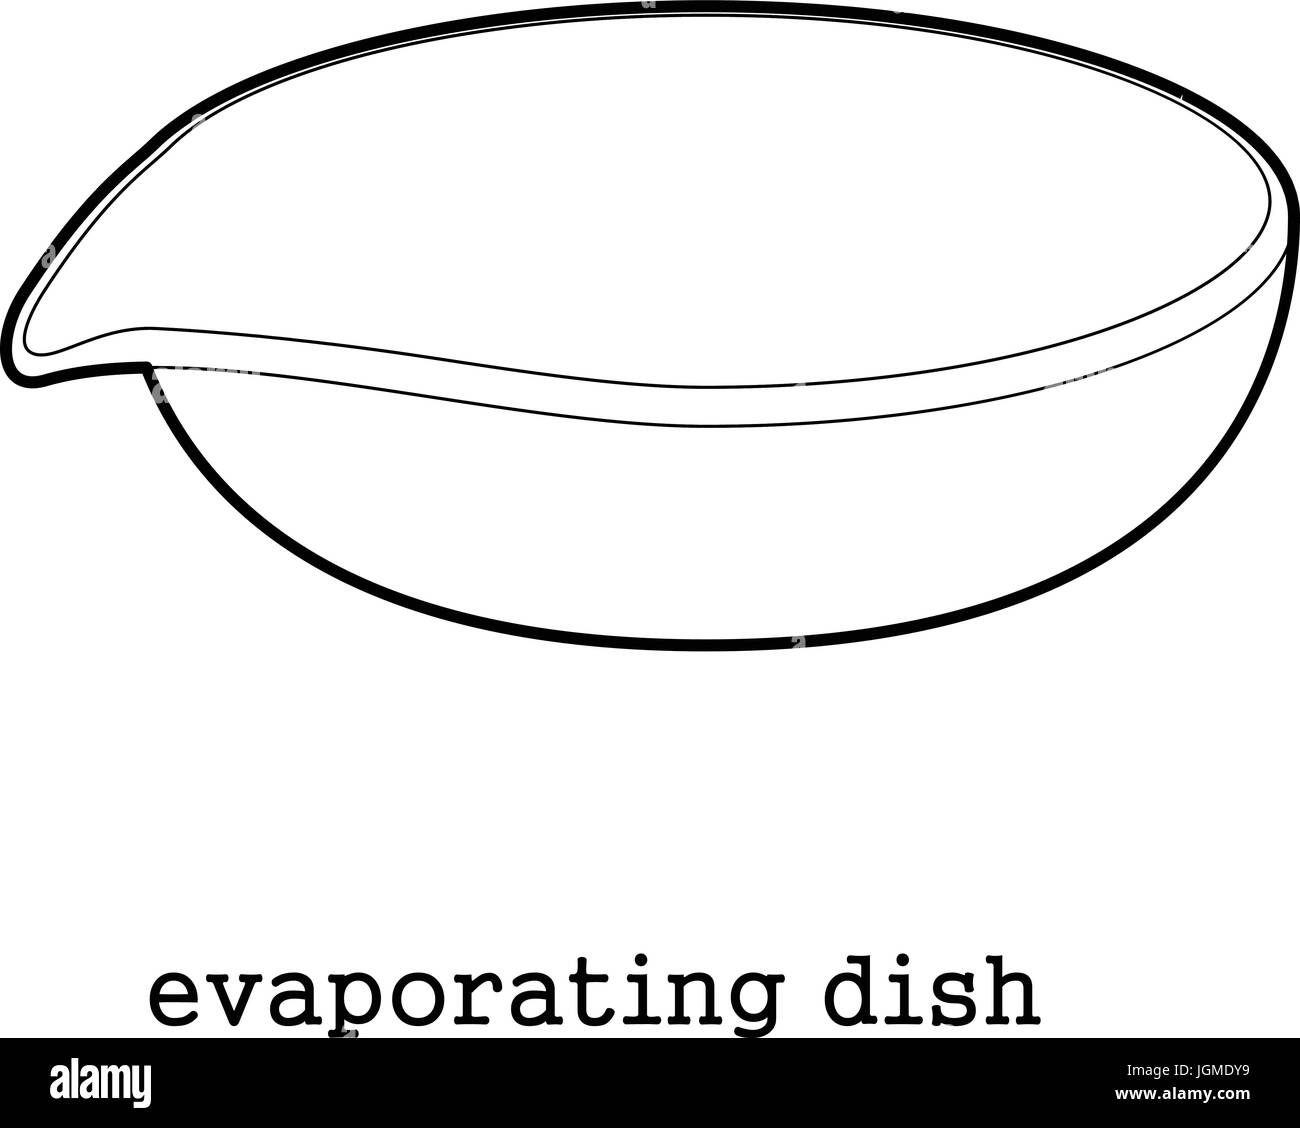 Evaporating Dish Stock Illustrations  43 Evaporating Dish Stock  Illustrations Vectors  Clipart  Dreamstime